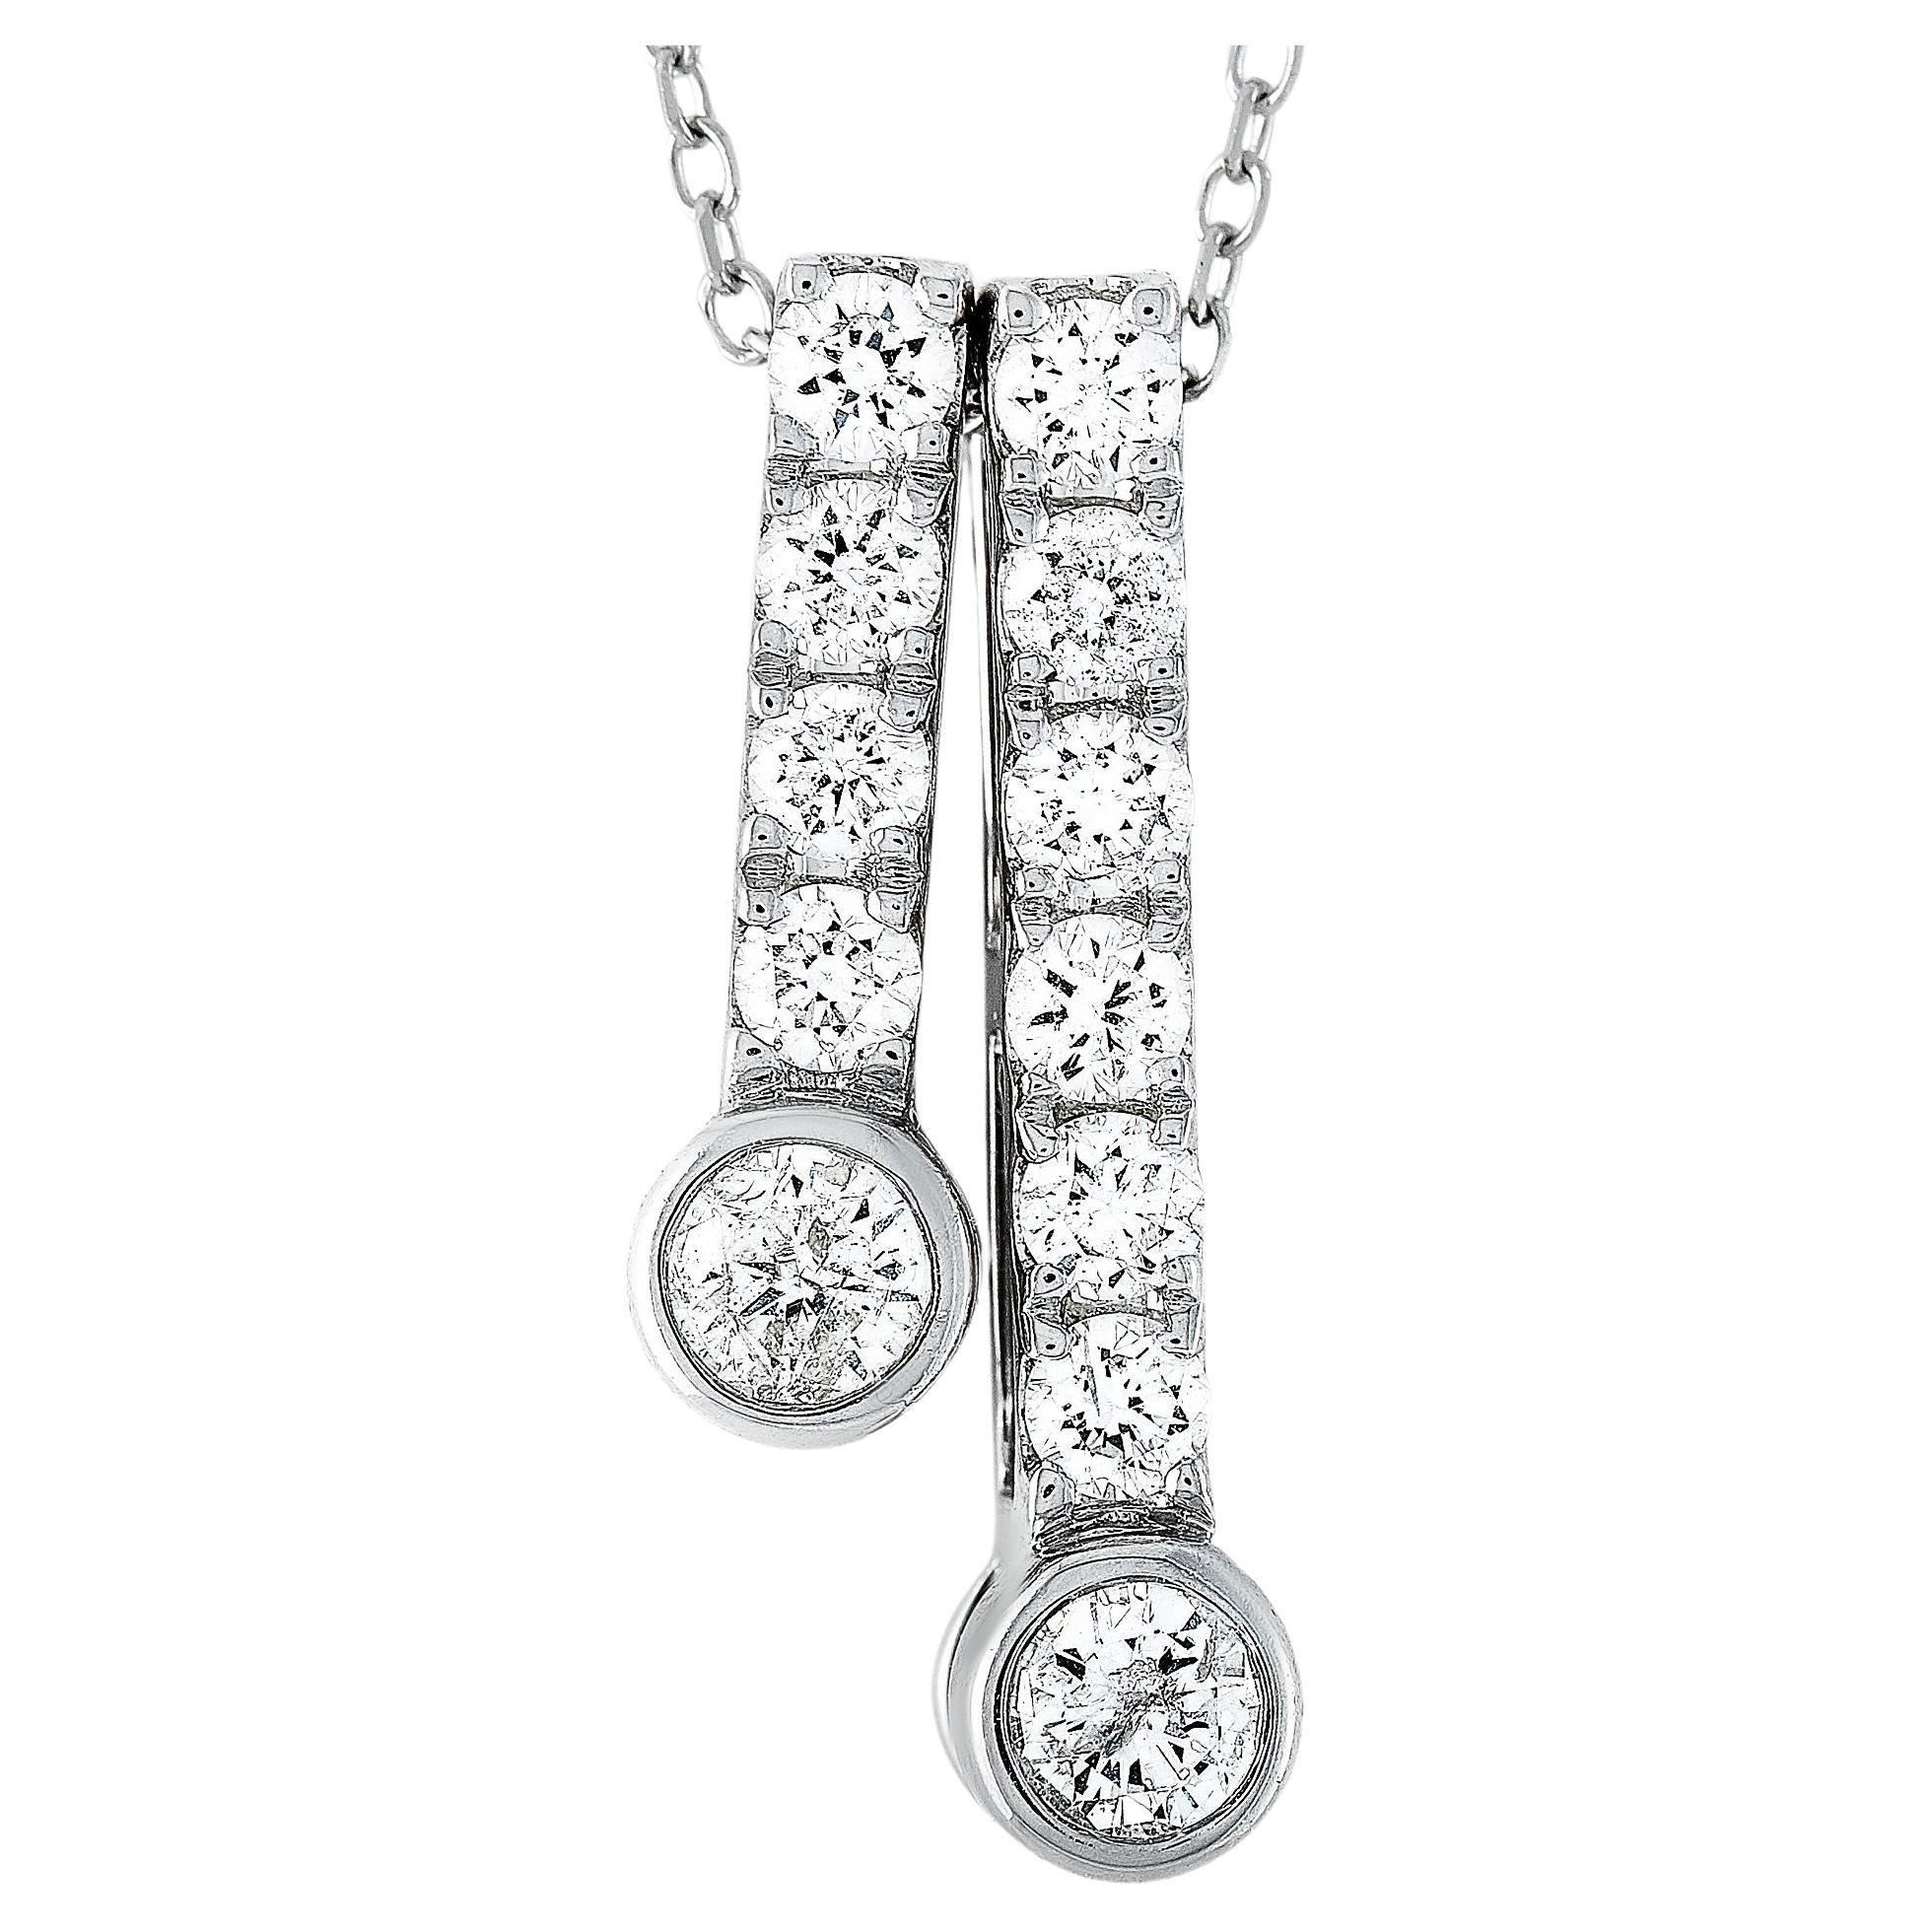 LB Exclusive 14k White Gold 0.50 Carat Diamond Pendant Necklace